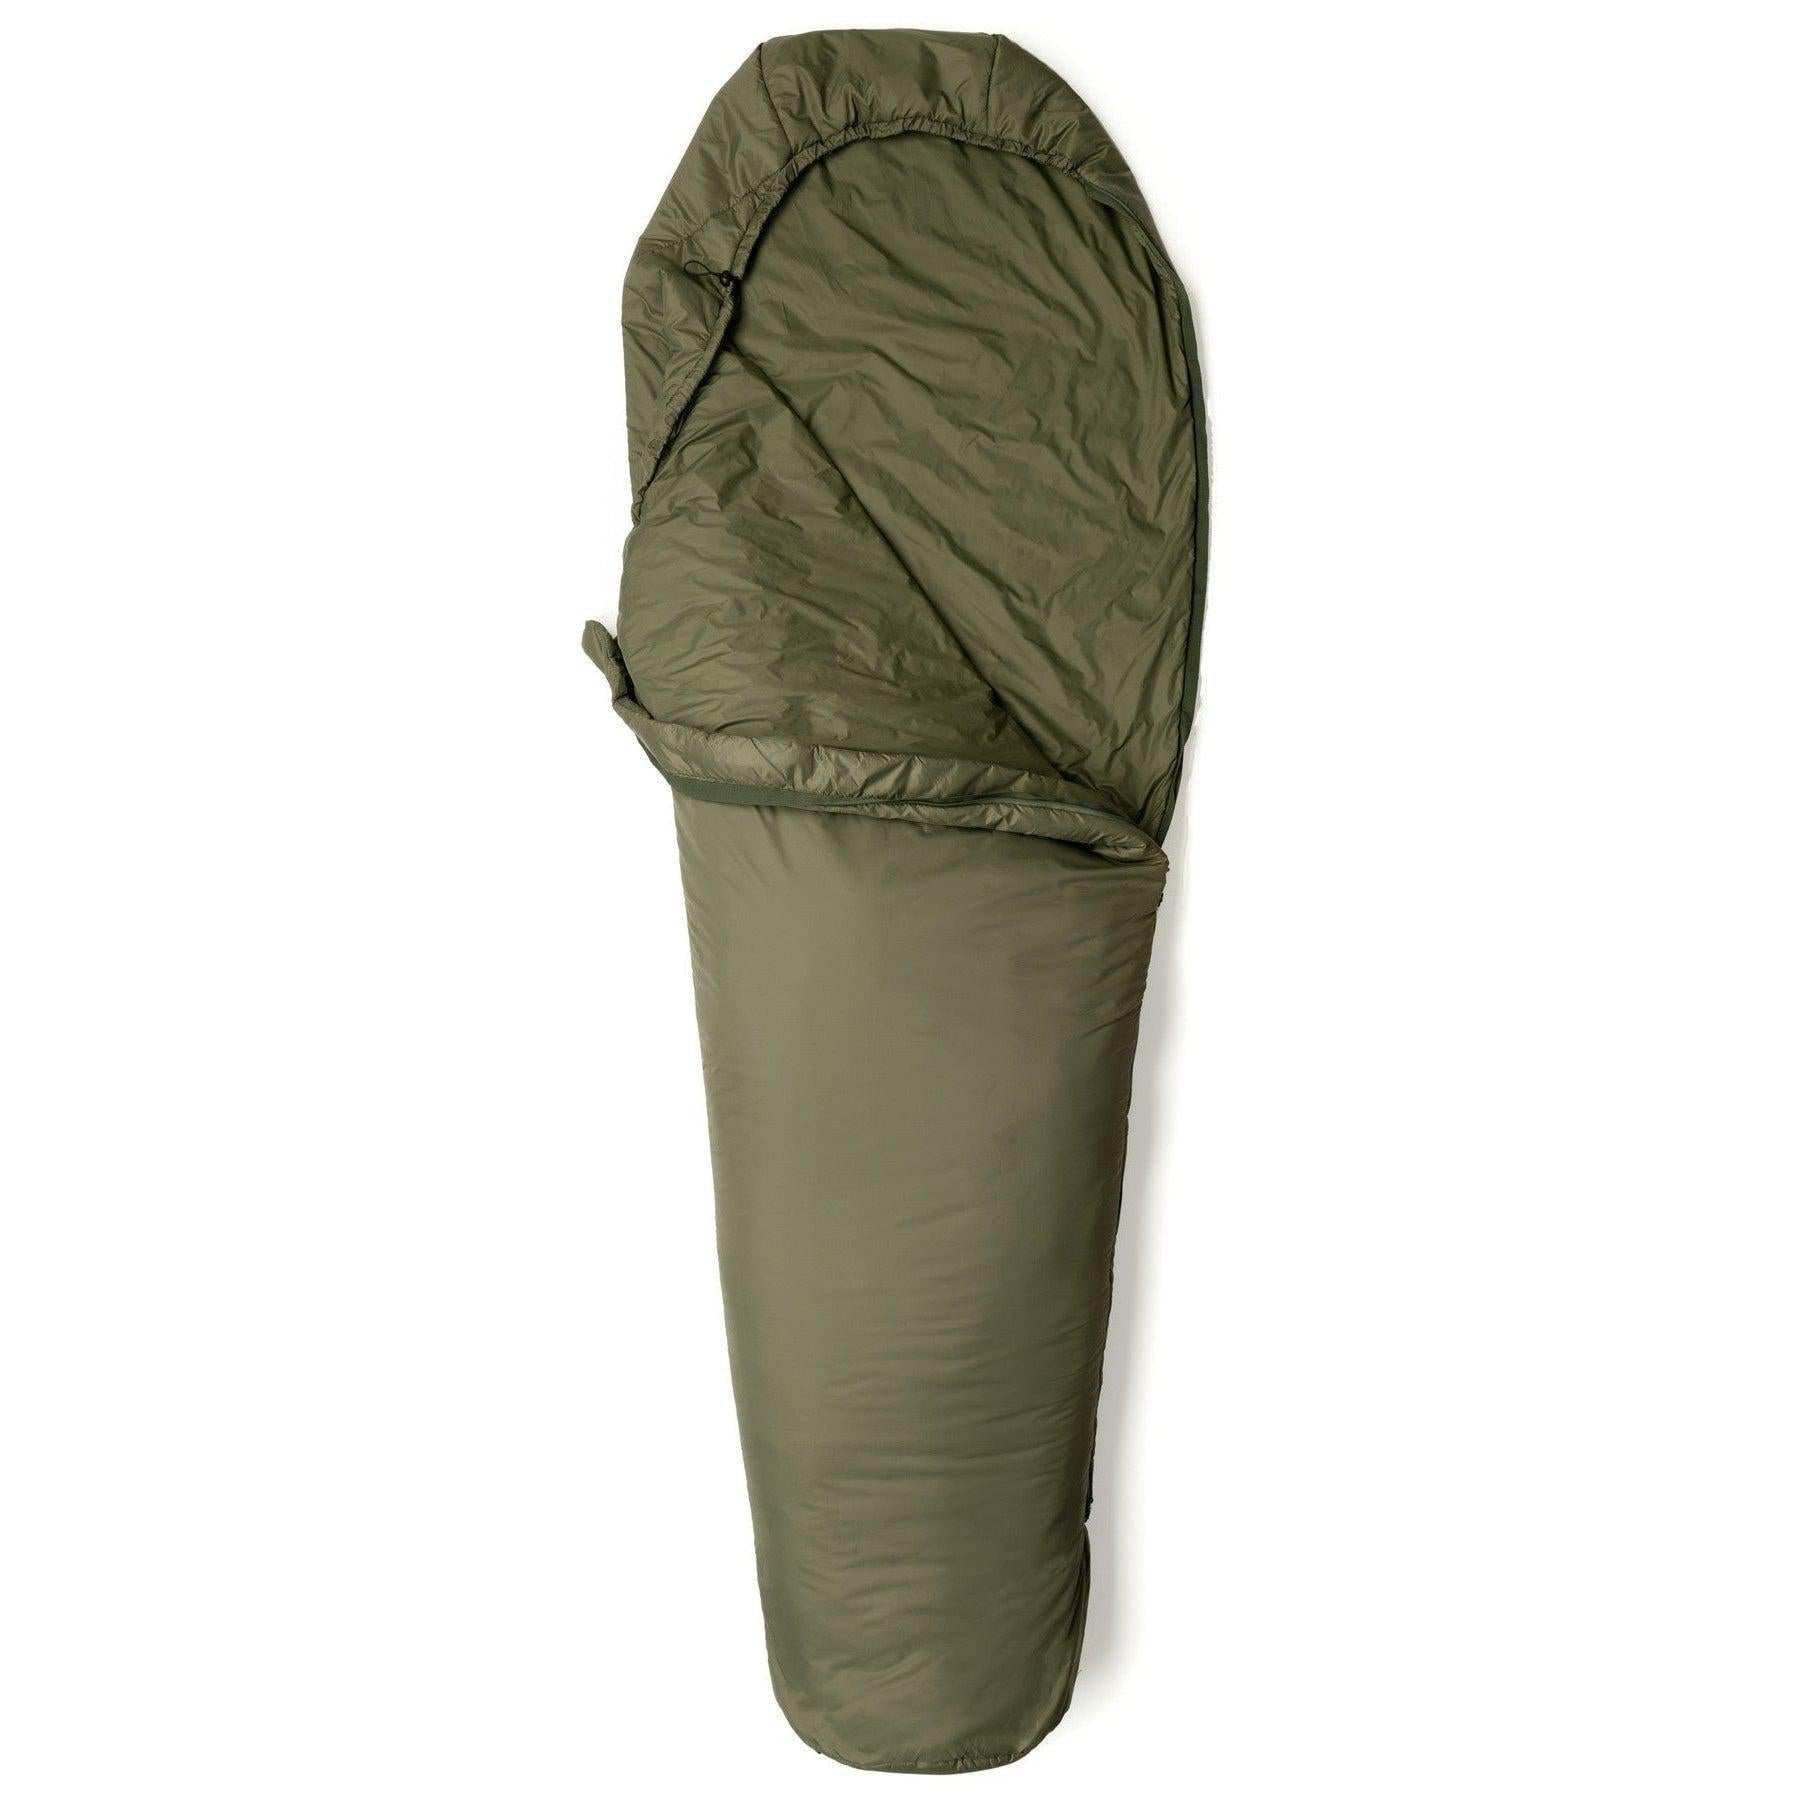 Snugpak Softie 3 Merlin Sleeping Bag - Olive 5°C To 0°C